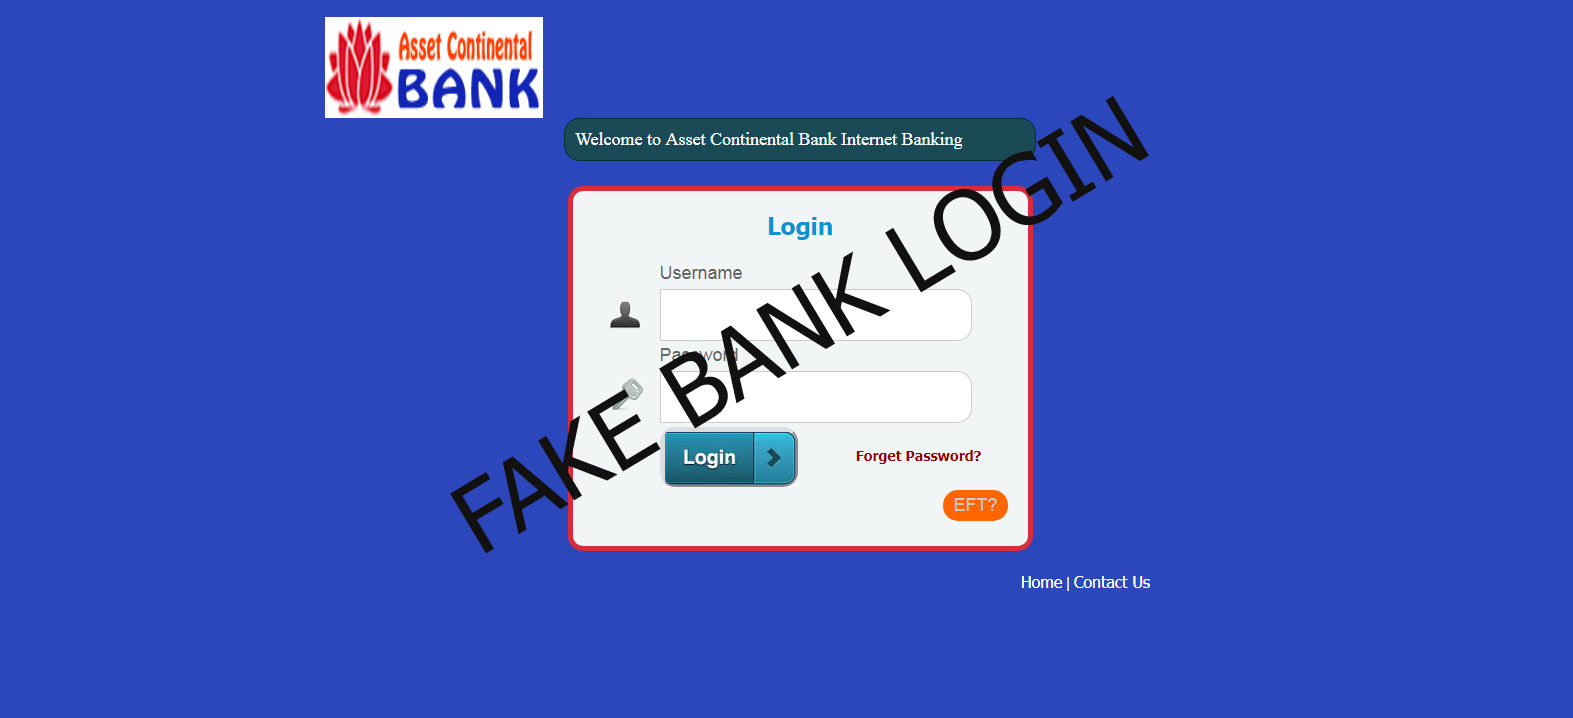 Fake Bank login page